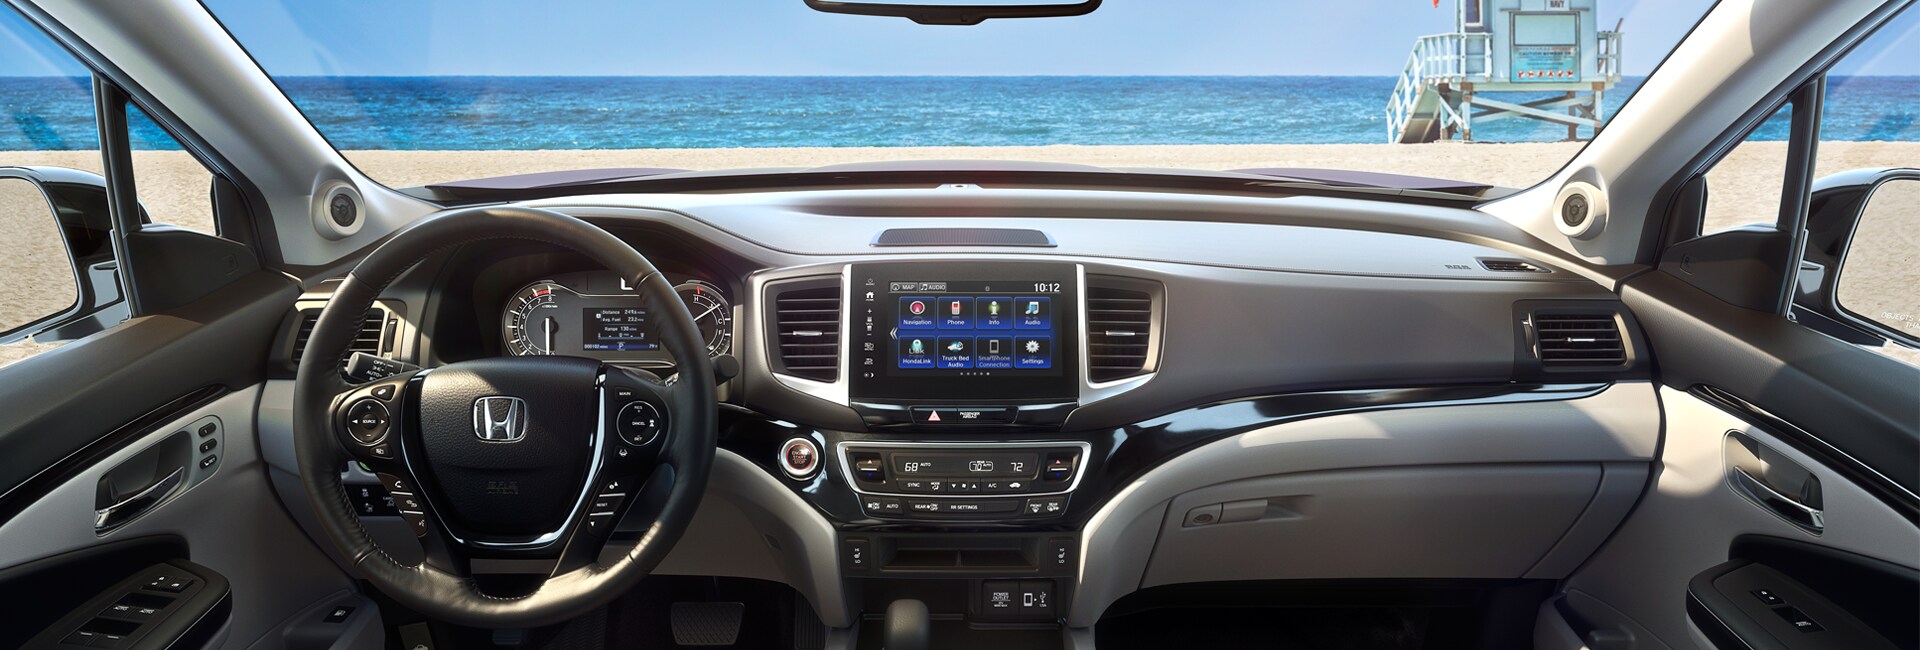 2017 Honda Ridgeline interior Features